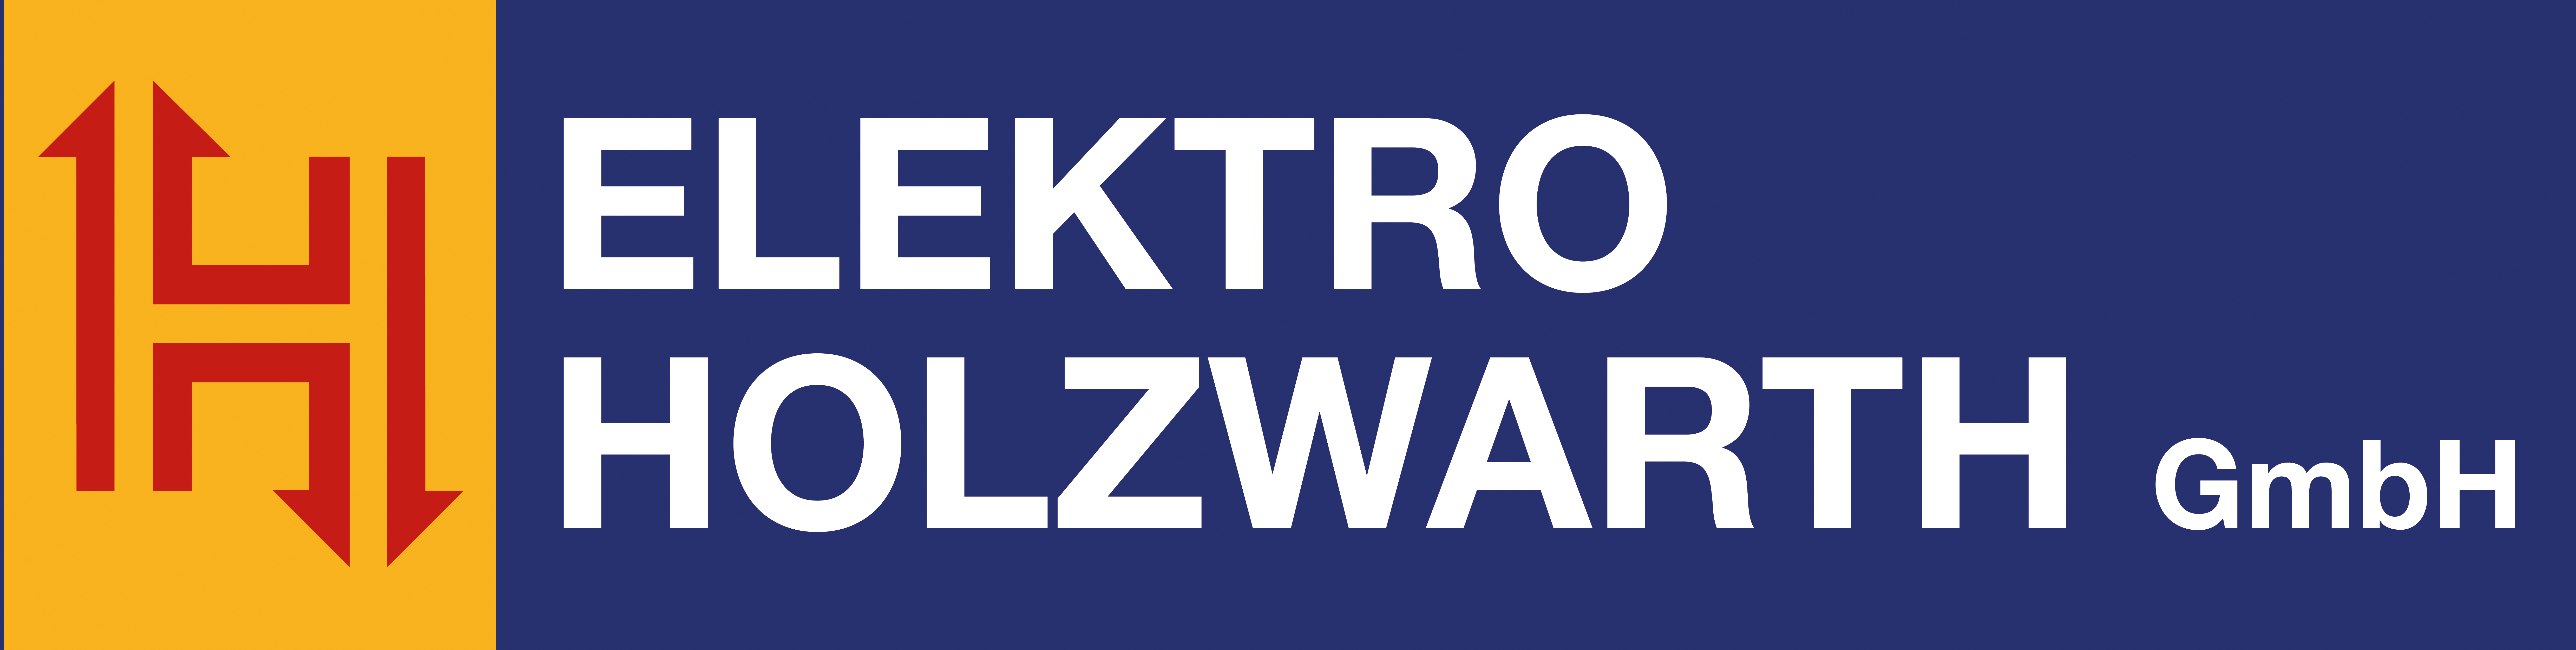 Elektro Holzwarth GmbH